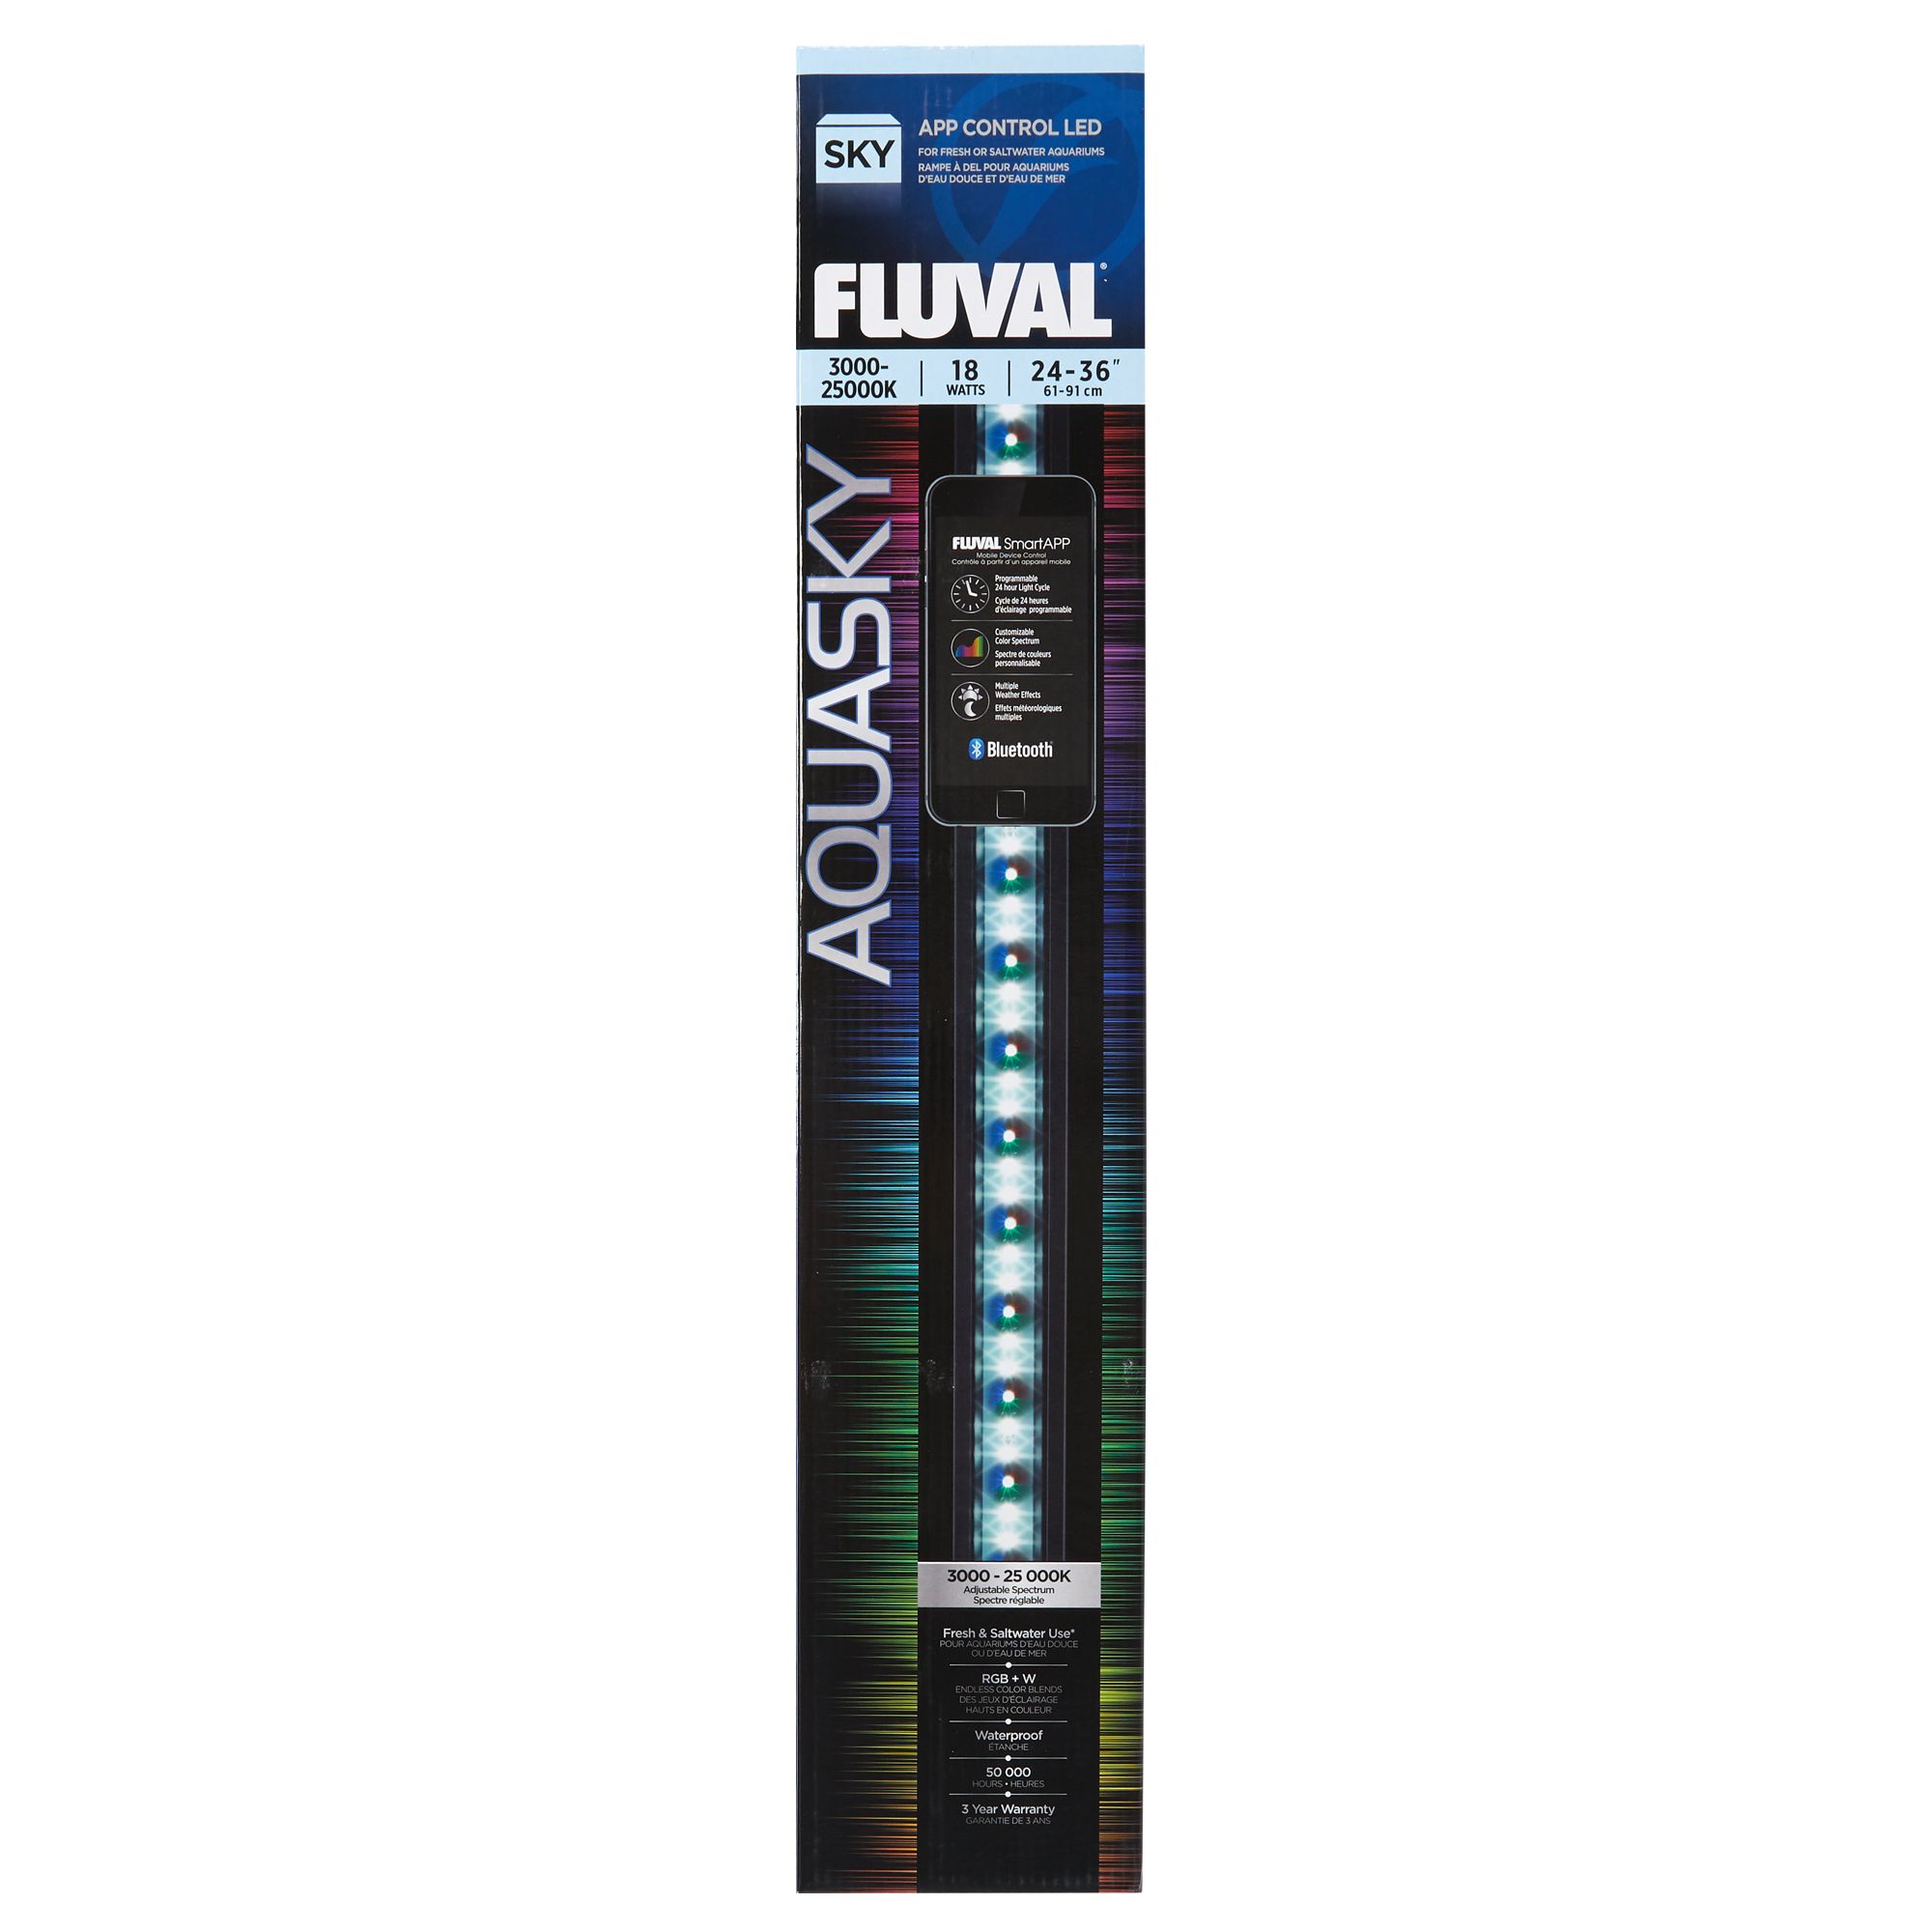 Fluval Aquasky Led Aquarium Bluetooth Light With Fluvalsmart App